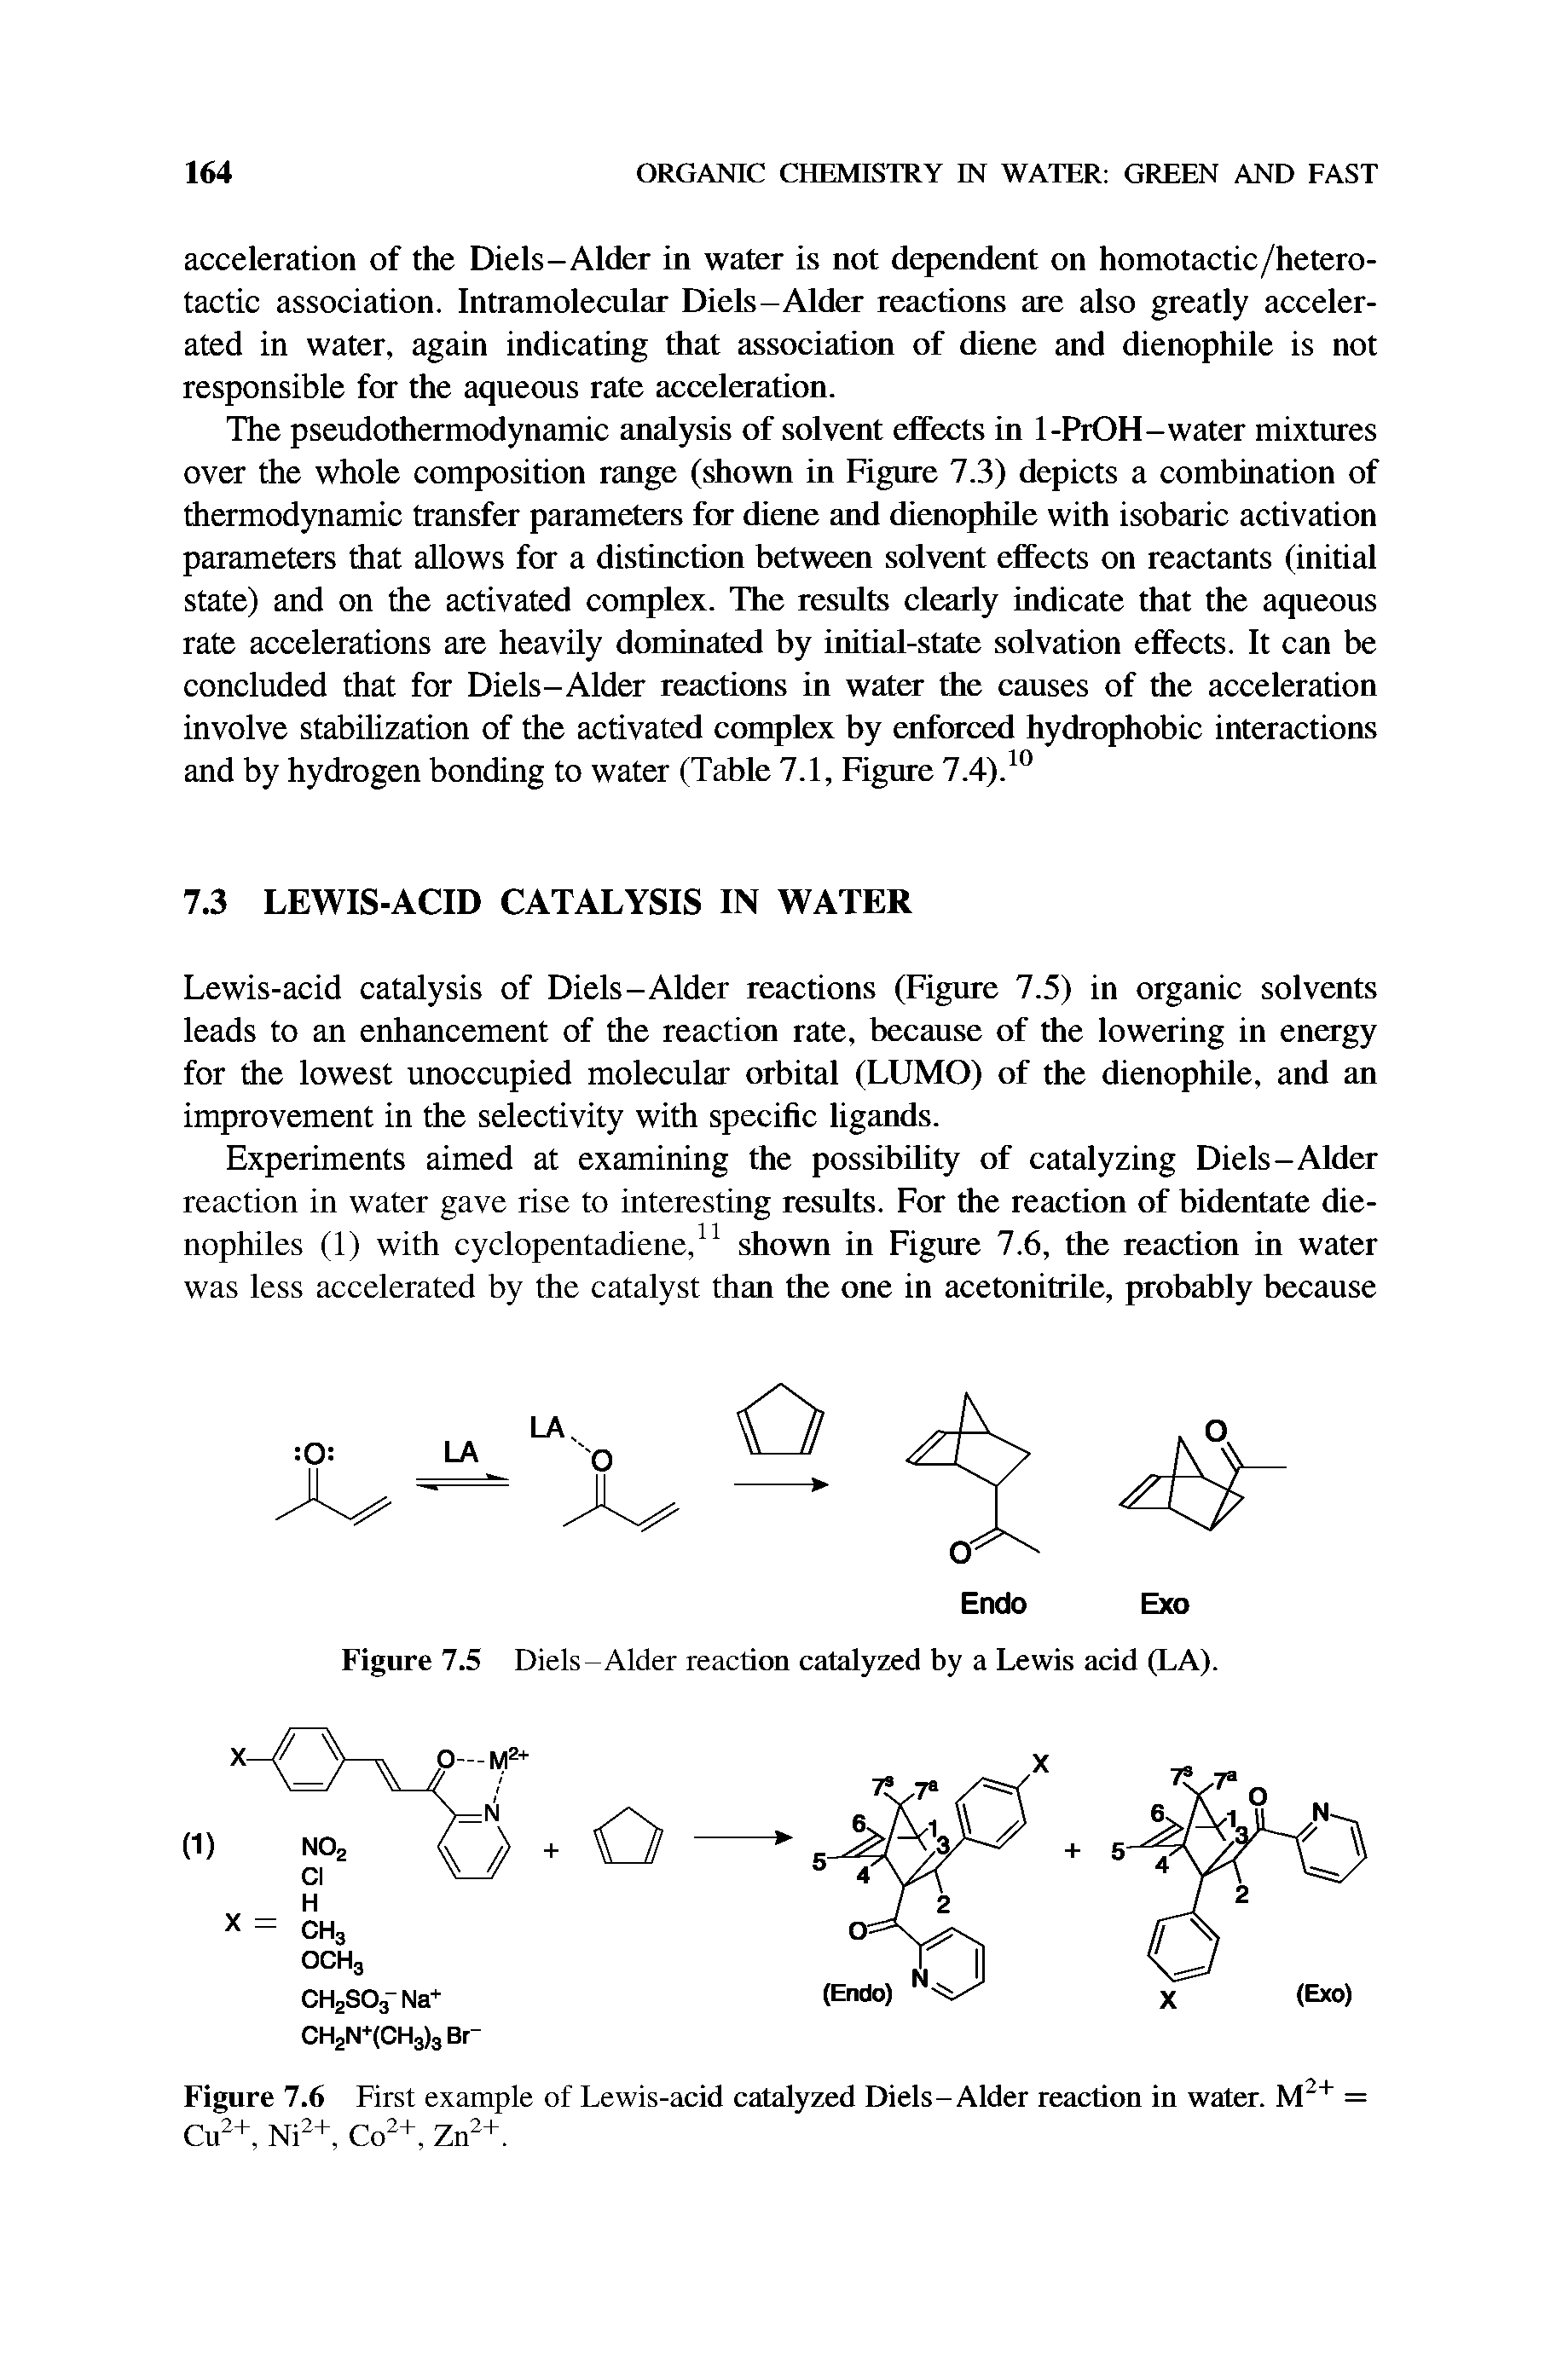 Figure 7.5 Diels-Alder reaction catalyzed by a Lewis acid (LA).